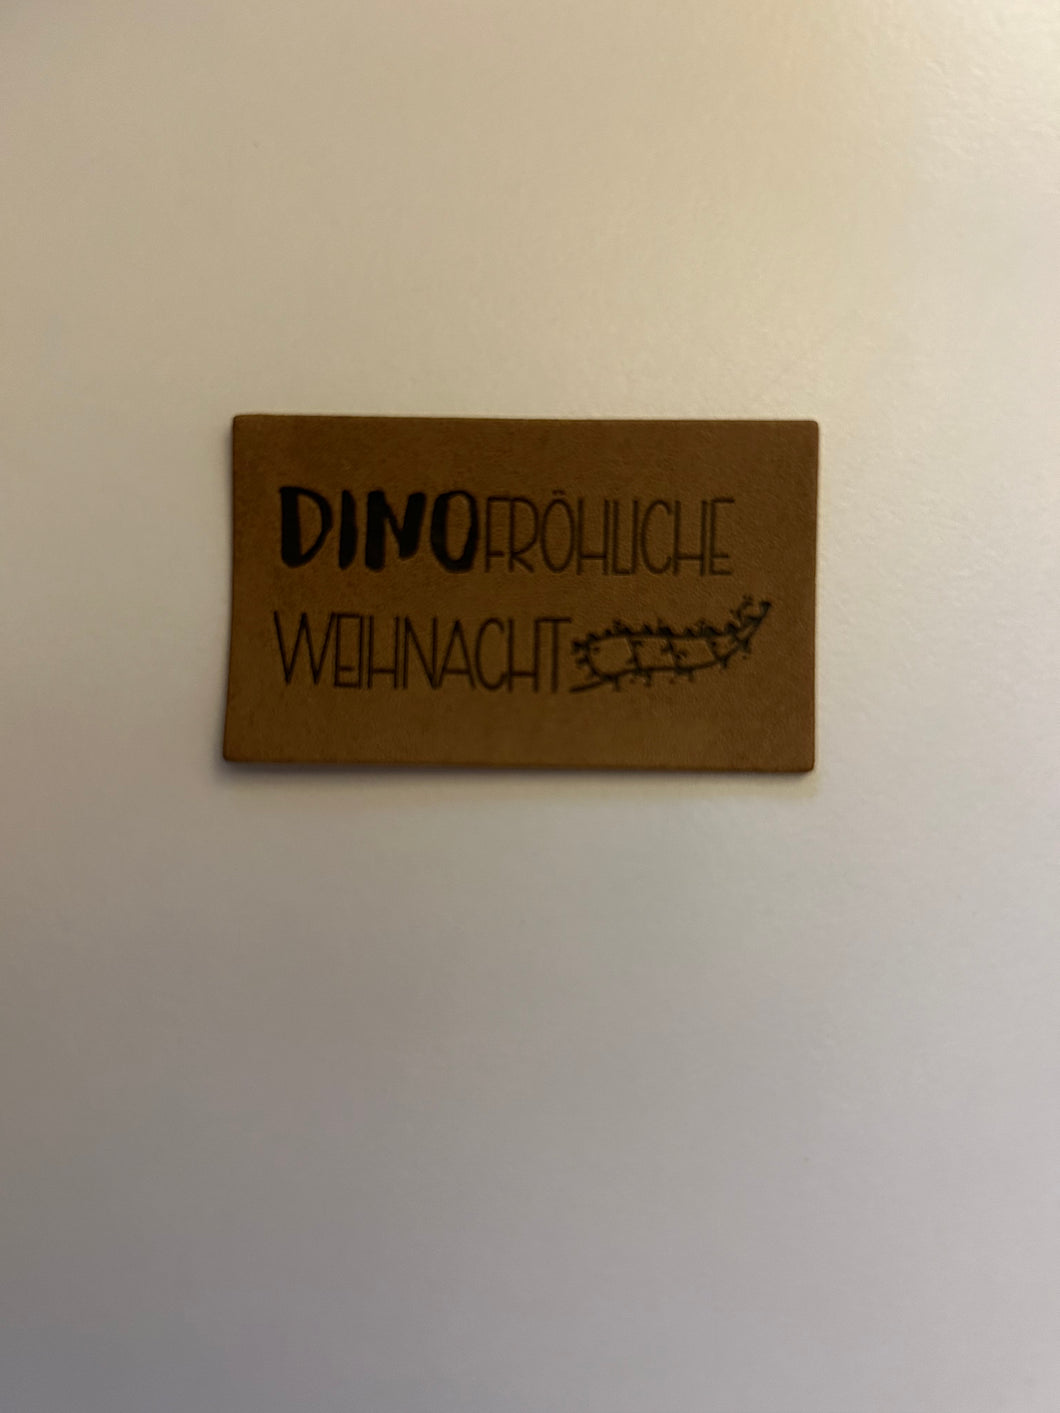 Dinofröhliche Weihnacht - Kunstleder Label